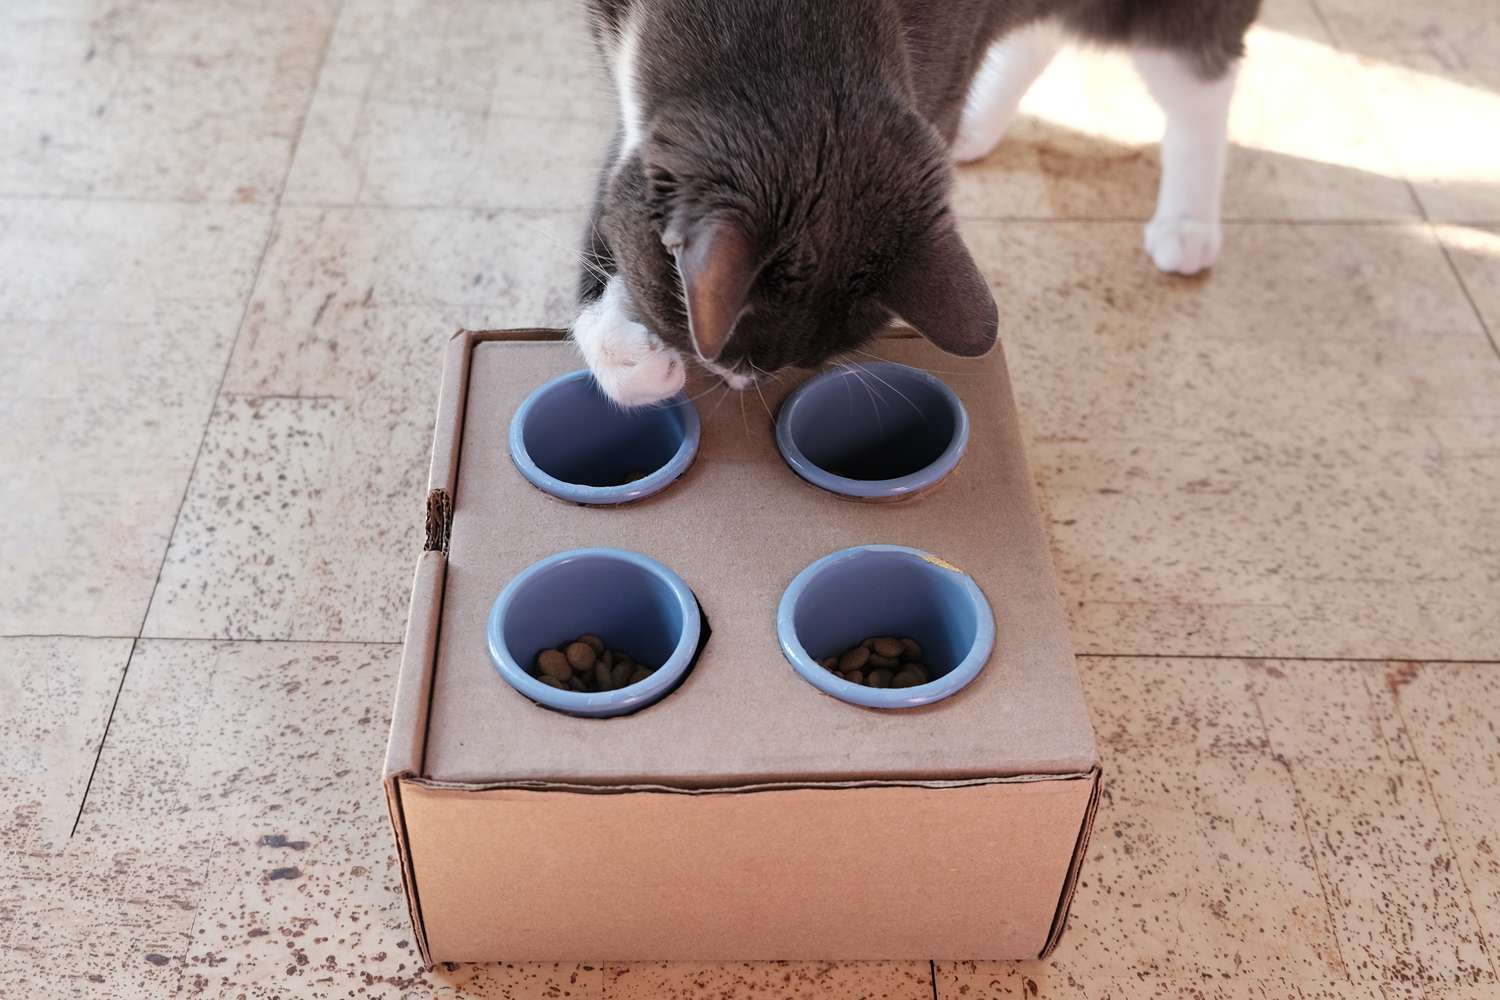 el gato gris y blanco saca las golosinas con la pata de la caja de cartón del comedero DIY